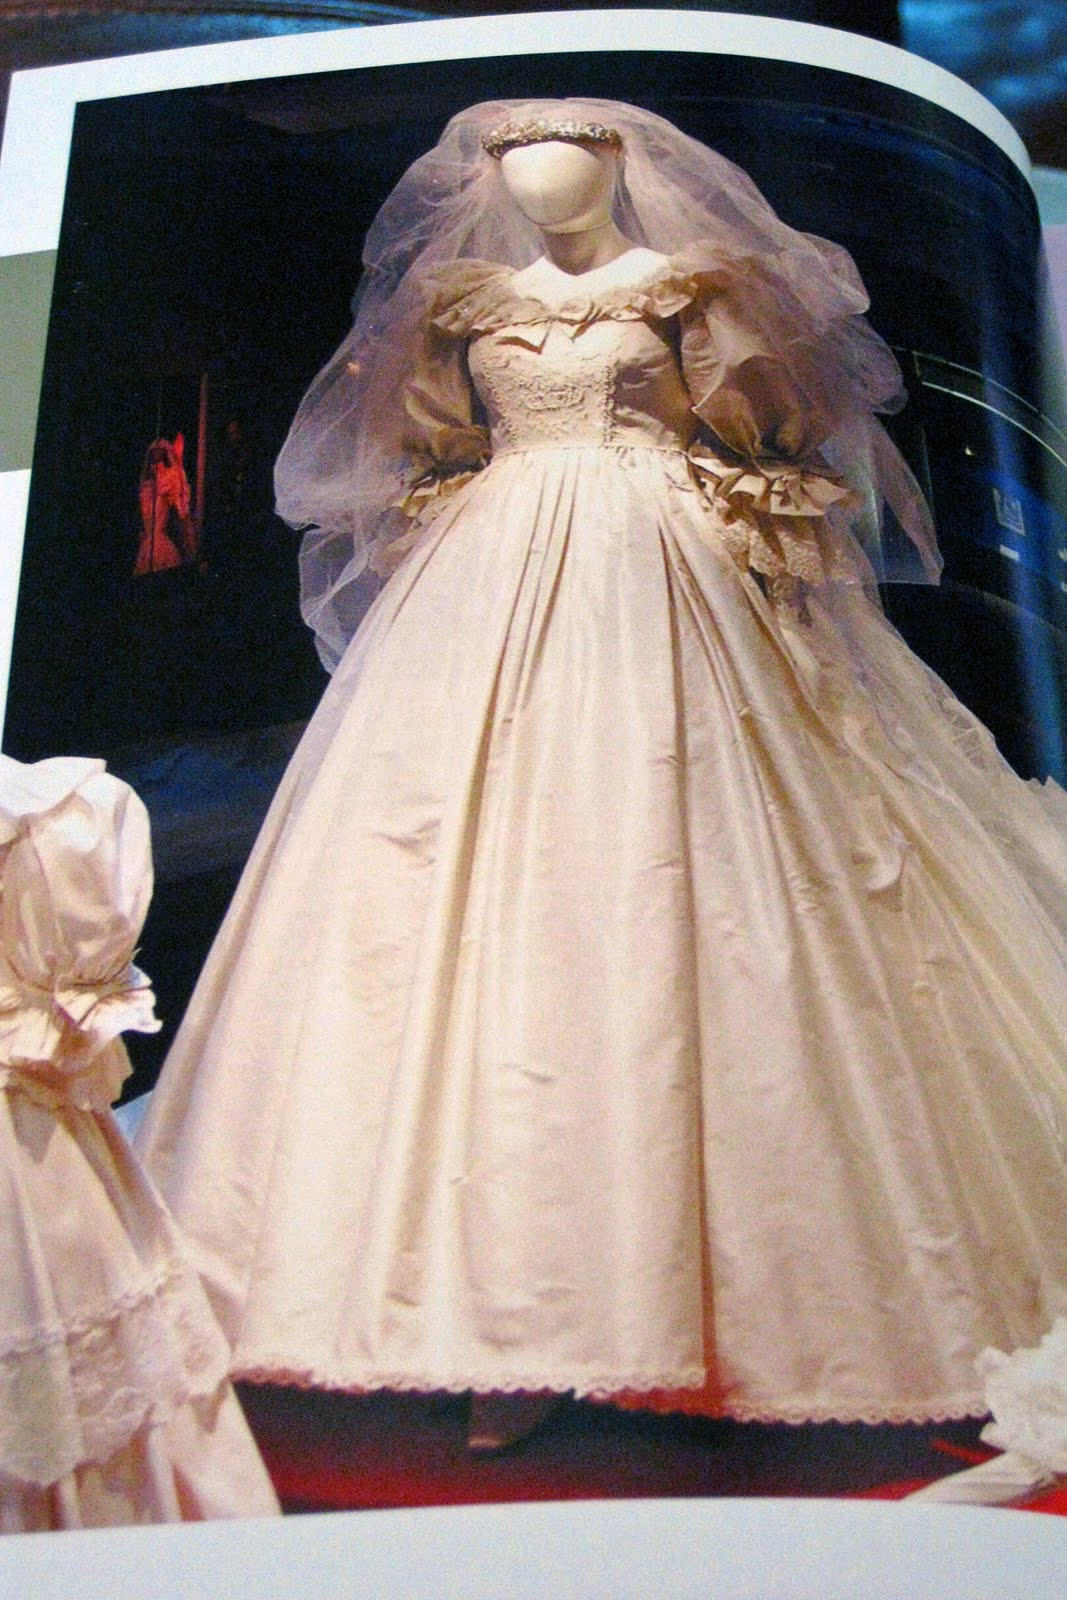 Casket Princess Diana Burial Dress : princess diana funeral dress ...